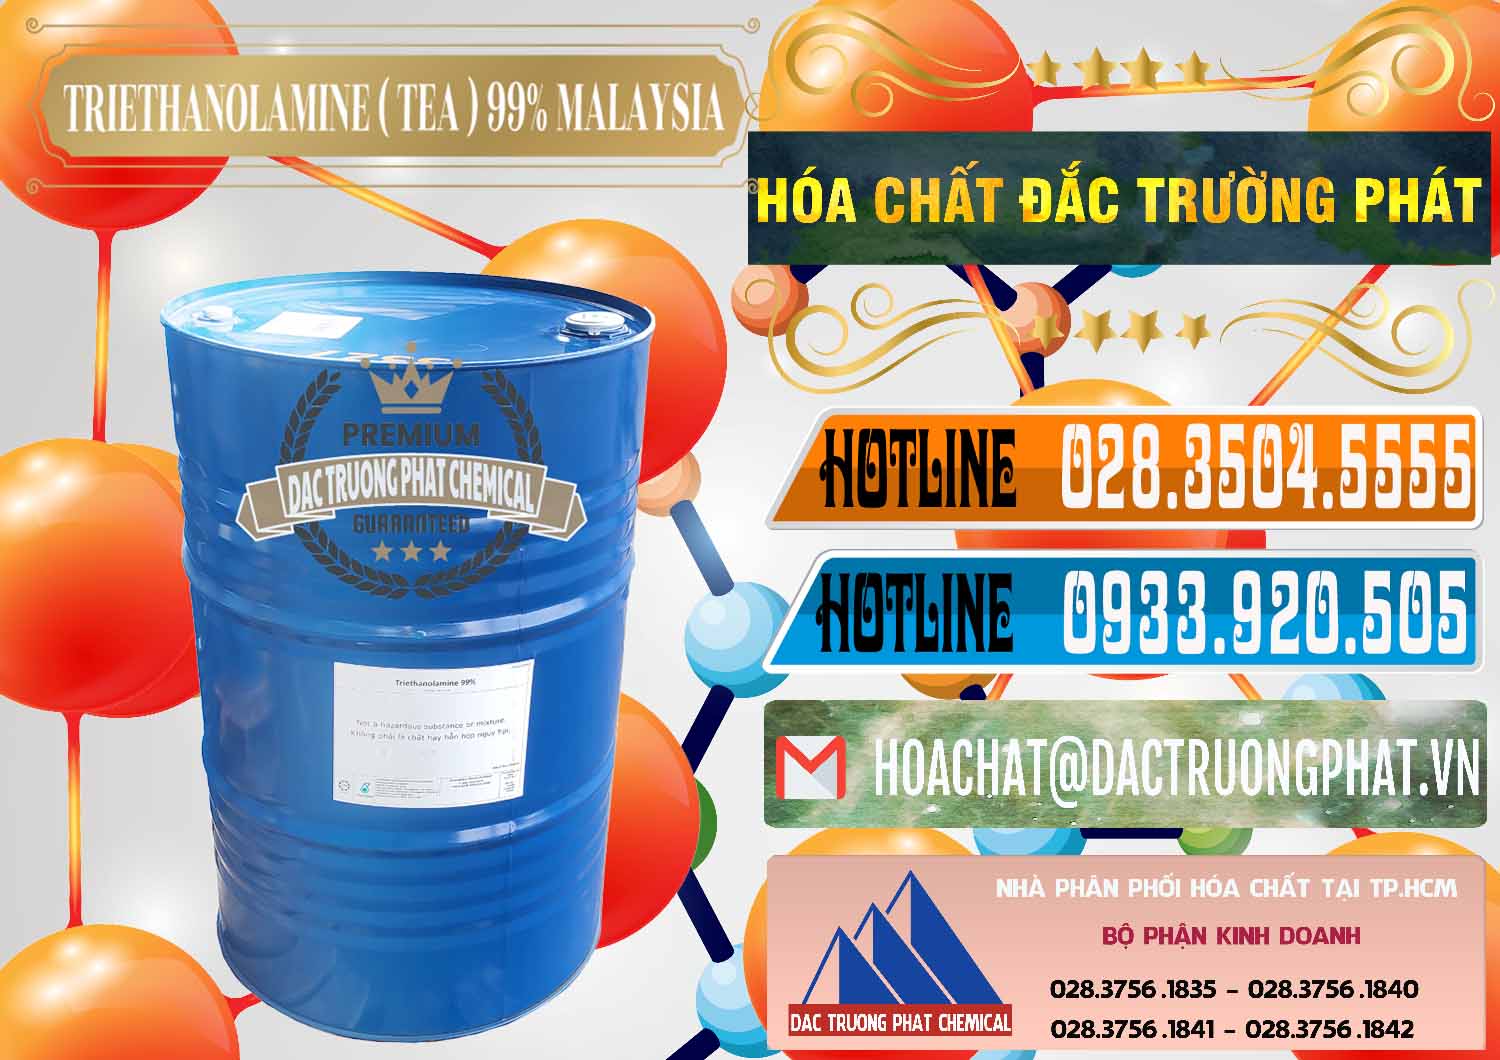 Cty bán _ phân phối TEA - Triethanolamine 99% Mã Lai Malaysia - 0323 - Bán - cung cấp hóa chất tại TP.HCM - stmp.net